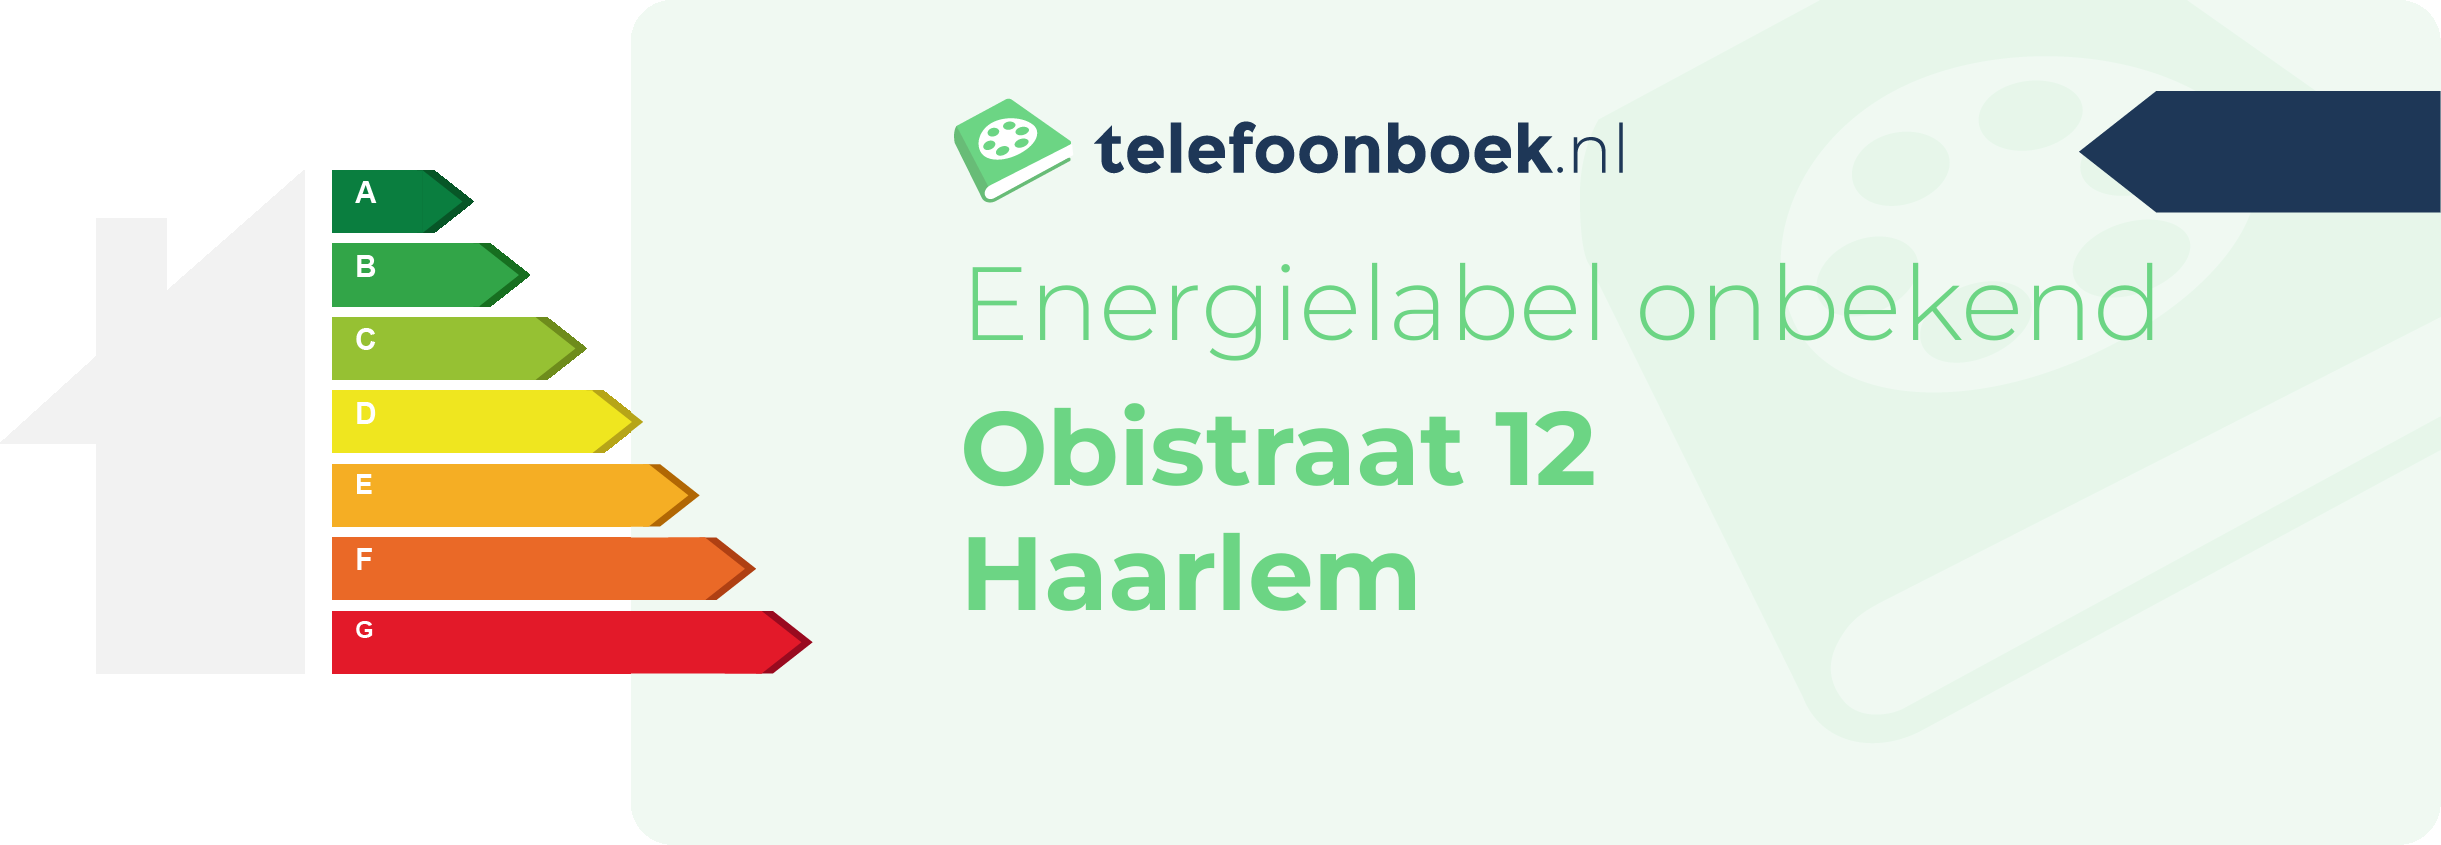 Energielabel Obistraat 12 Haarlem